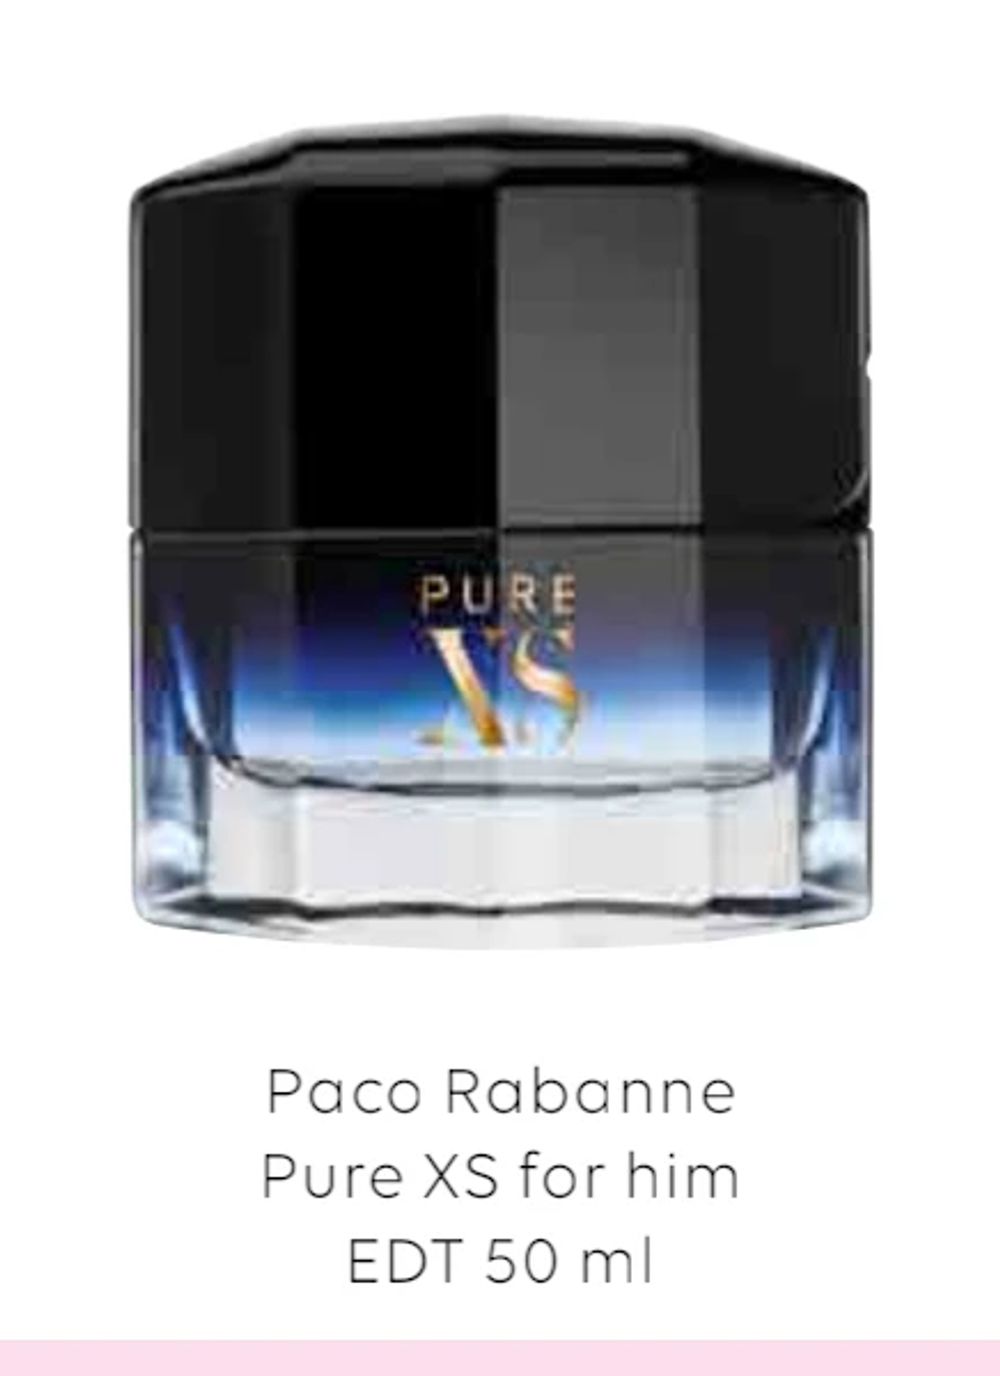 Tilbud på Paco Rabanne Pure XS for him EDT 50 ml fra Scandlines Travel Shop til 299 kr.